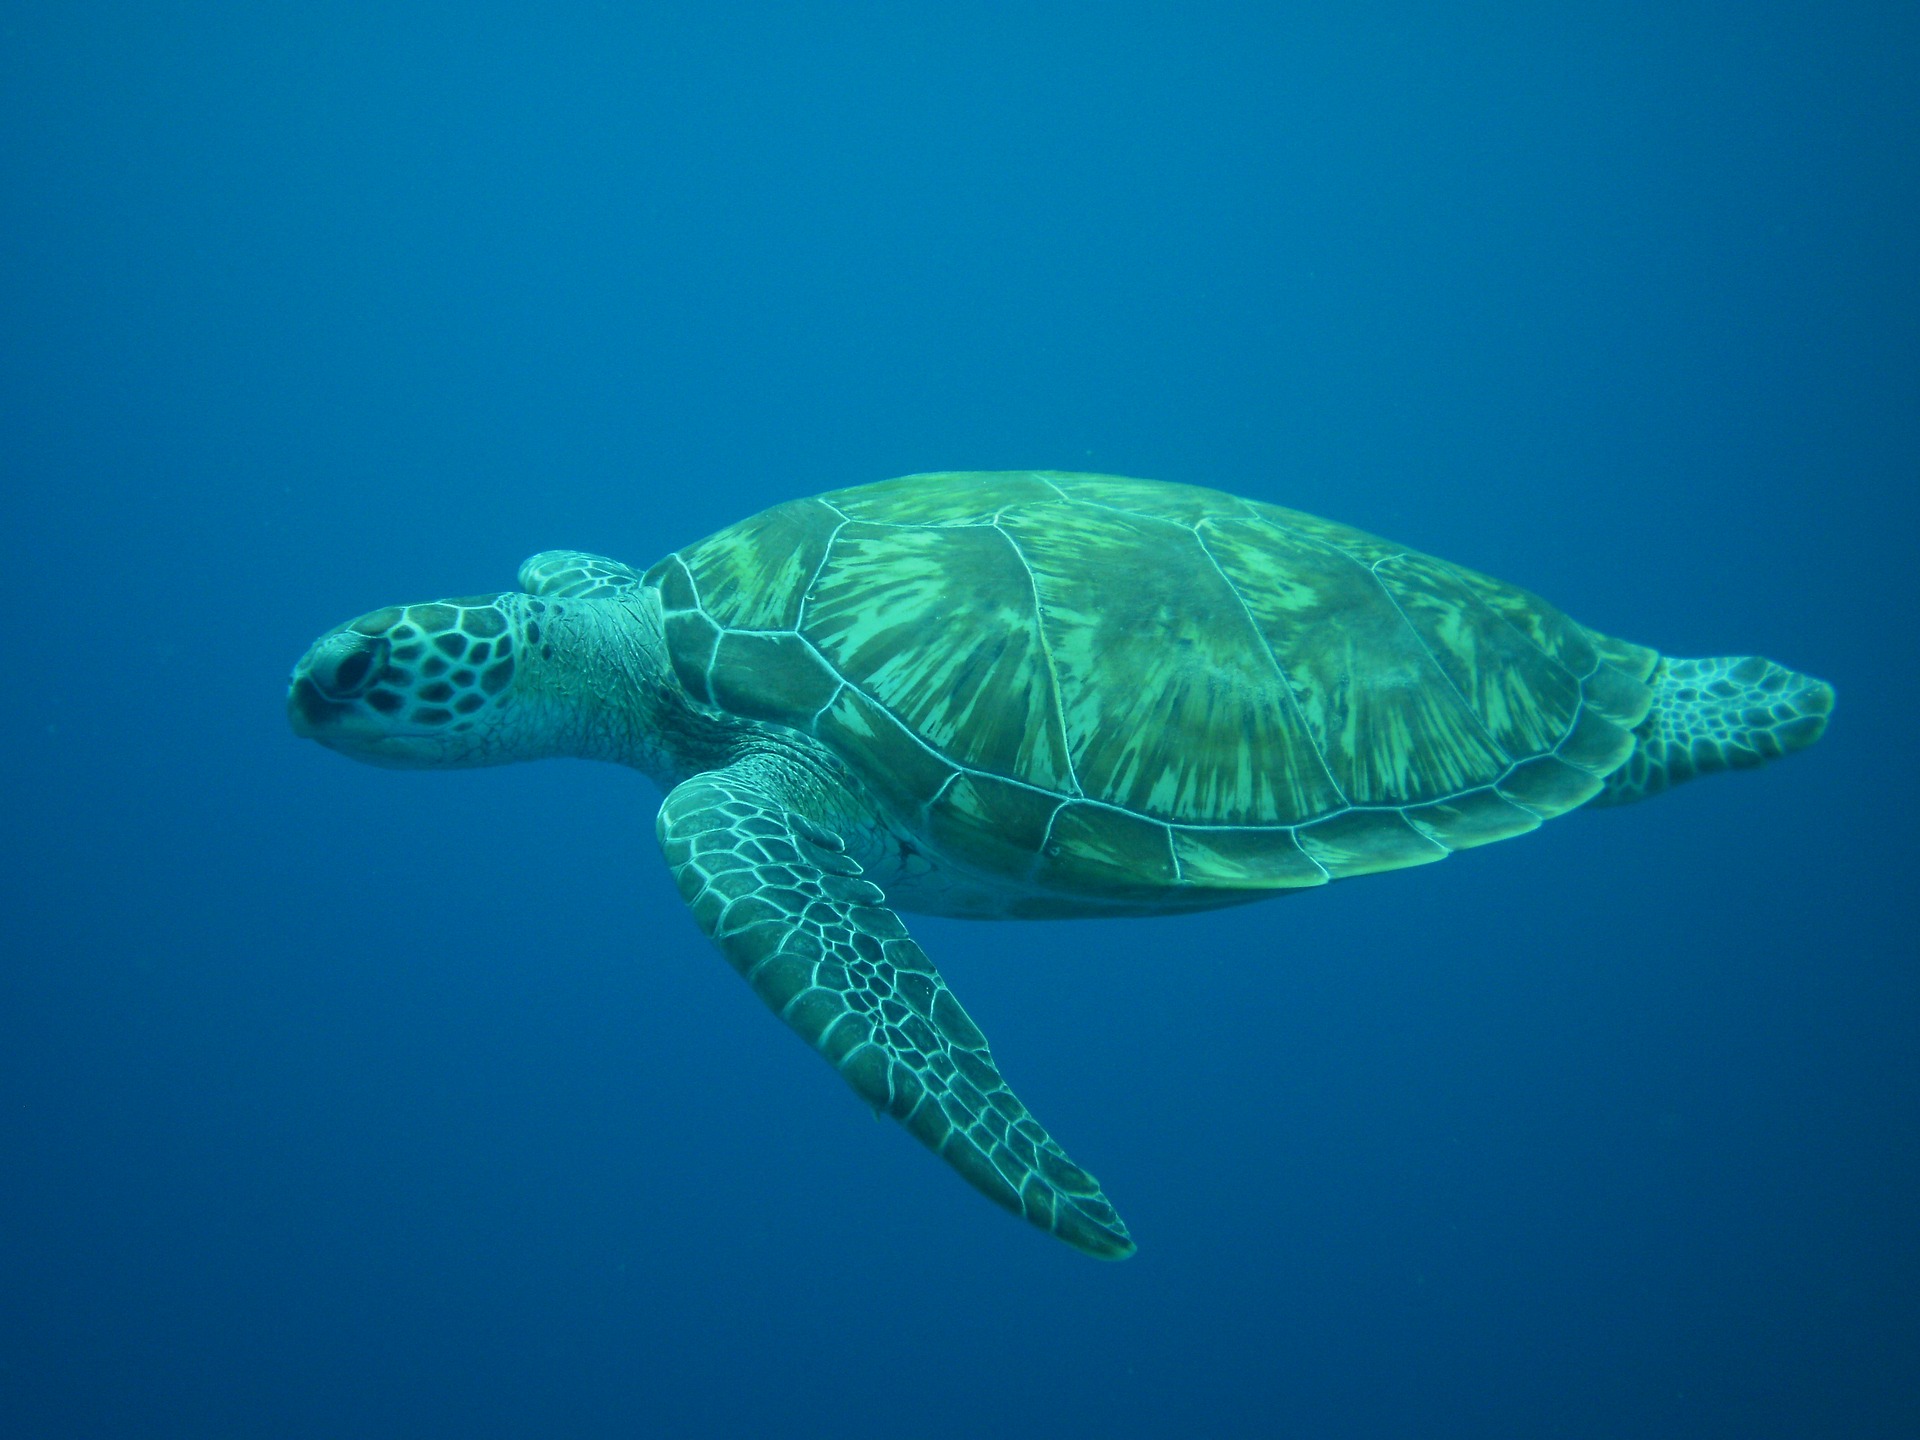 Du darfst das Leben leicht nehmen – oder was wir von einer grünen Meeresschildkröte lernen können